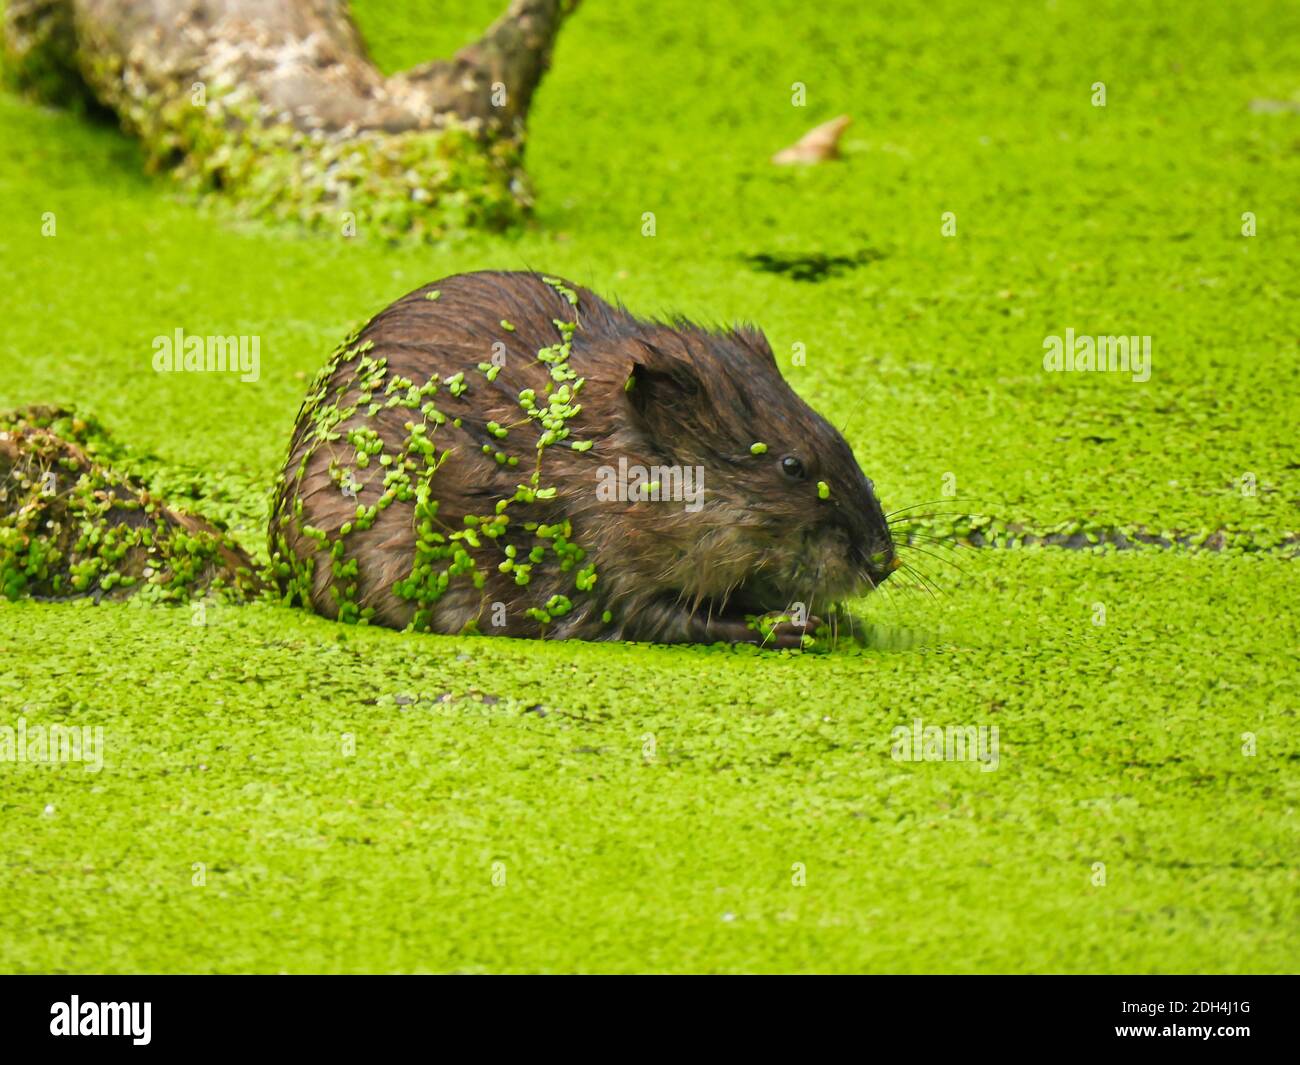 Bisamratte in einem Teich: Eine Bisamratte sitzt in einem Teich, der mit der Entengrasblüte bedeckt ist, die leuchtend grün ist und die gesamte Wasseroberfläche bedeckt und an der festklebt Stockfoto